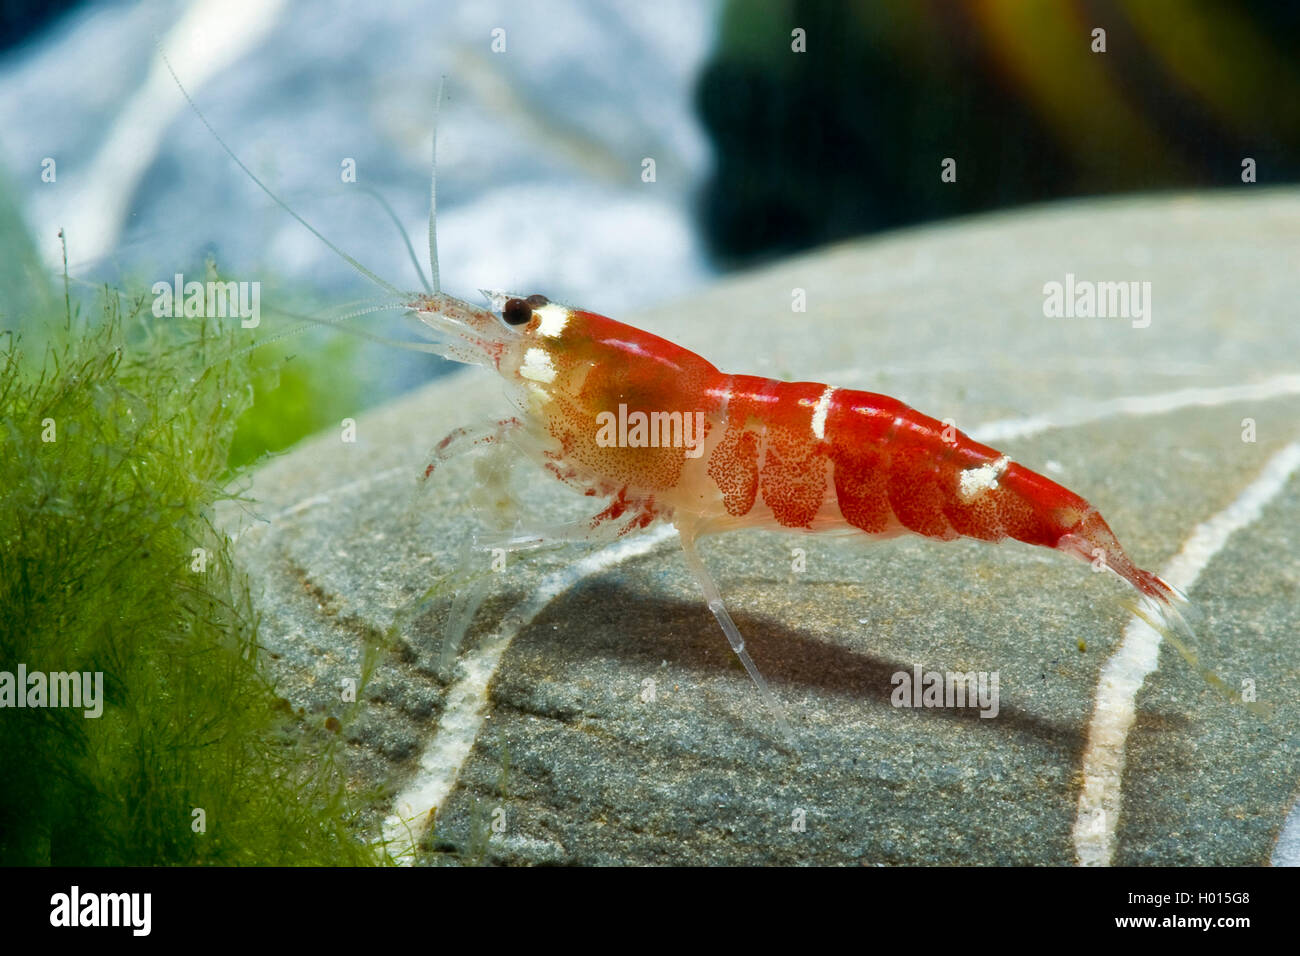 Crevette abeille, Crystal Red Shrimp Caridina Crystal Super logemanni (rouge), assis sur une pierre Banque D'Images